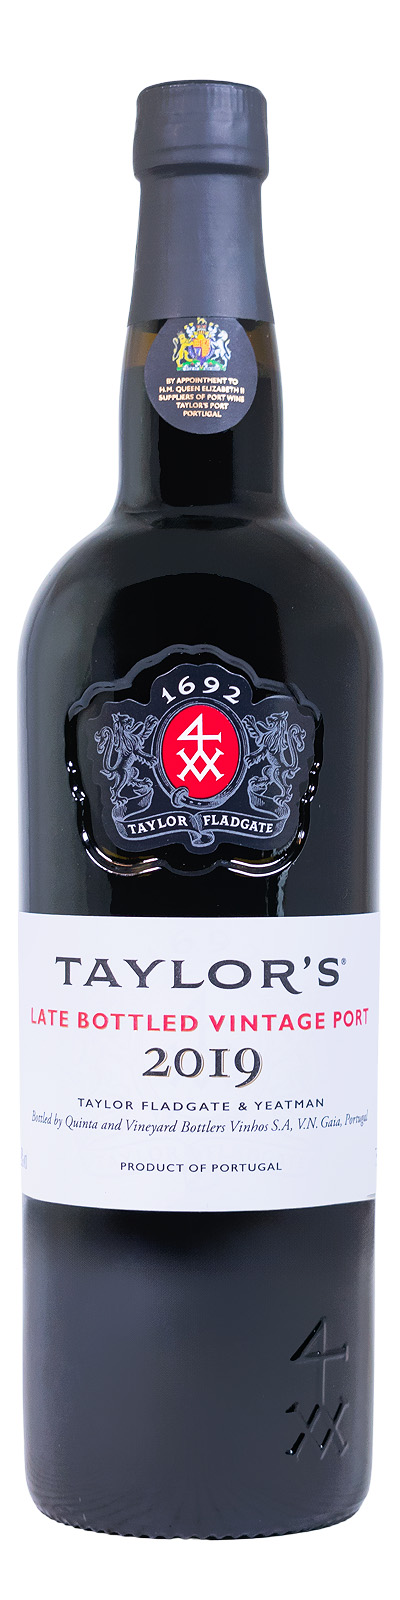 Taylors Late Bottled Vintage Port 2019 - 0,75L 20% vol